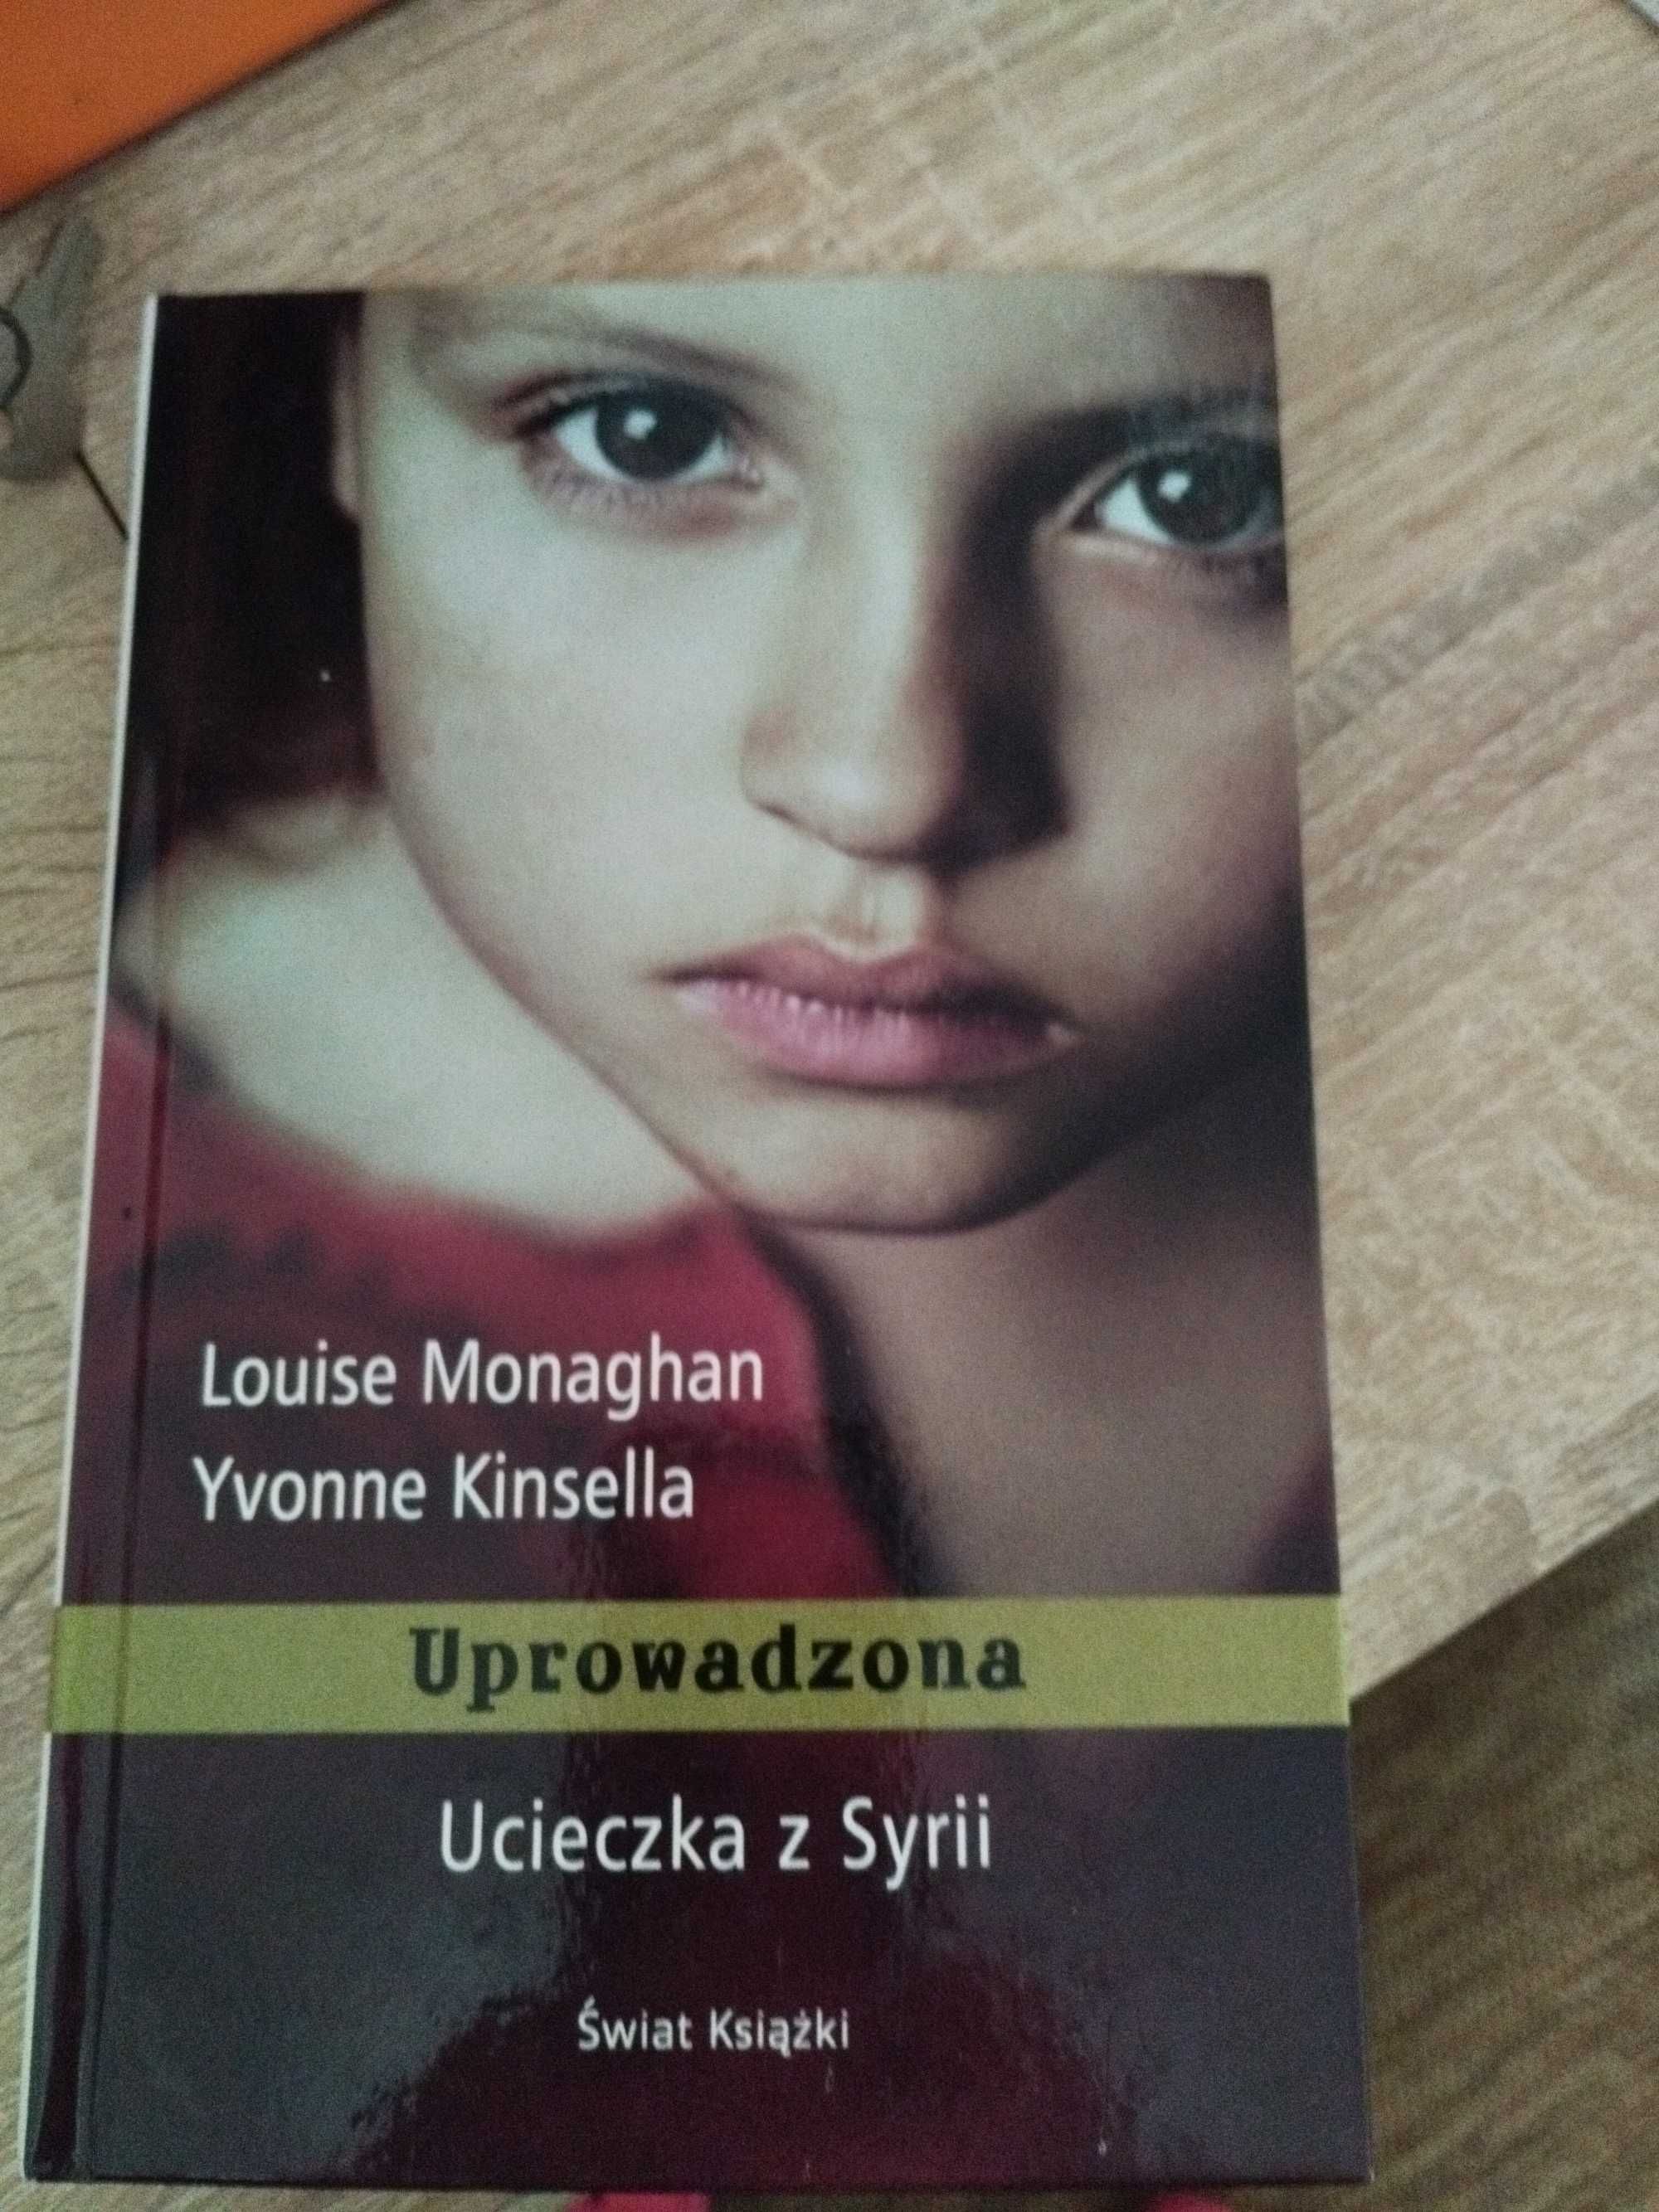 Louise Monaghan
Yvonne Kinsella
Uprowadzona ( Ucieczka z Syrii)